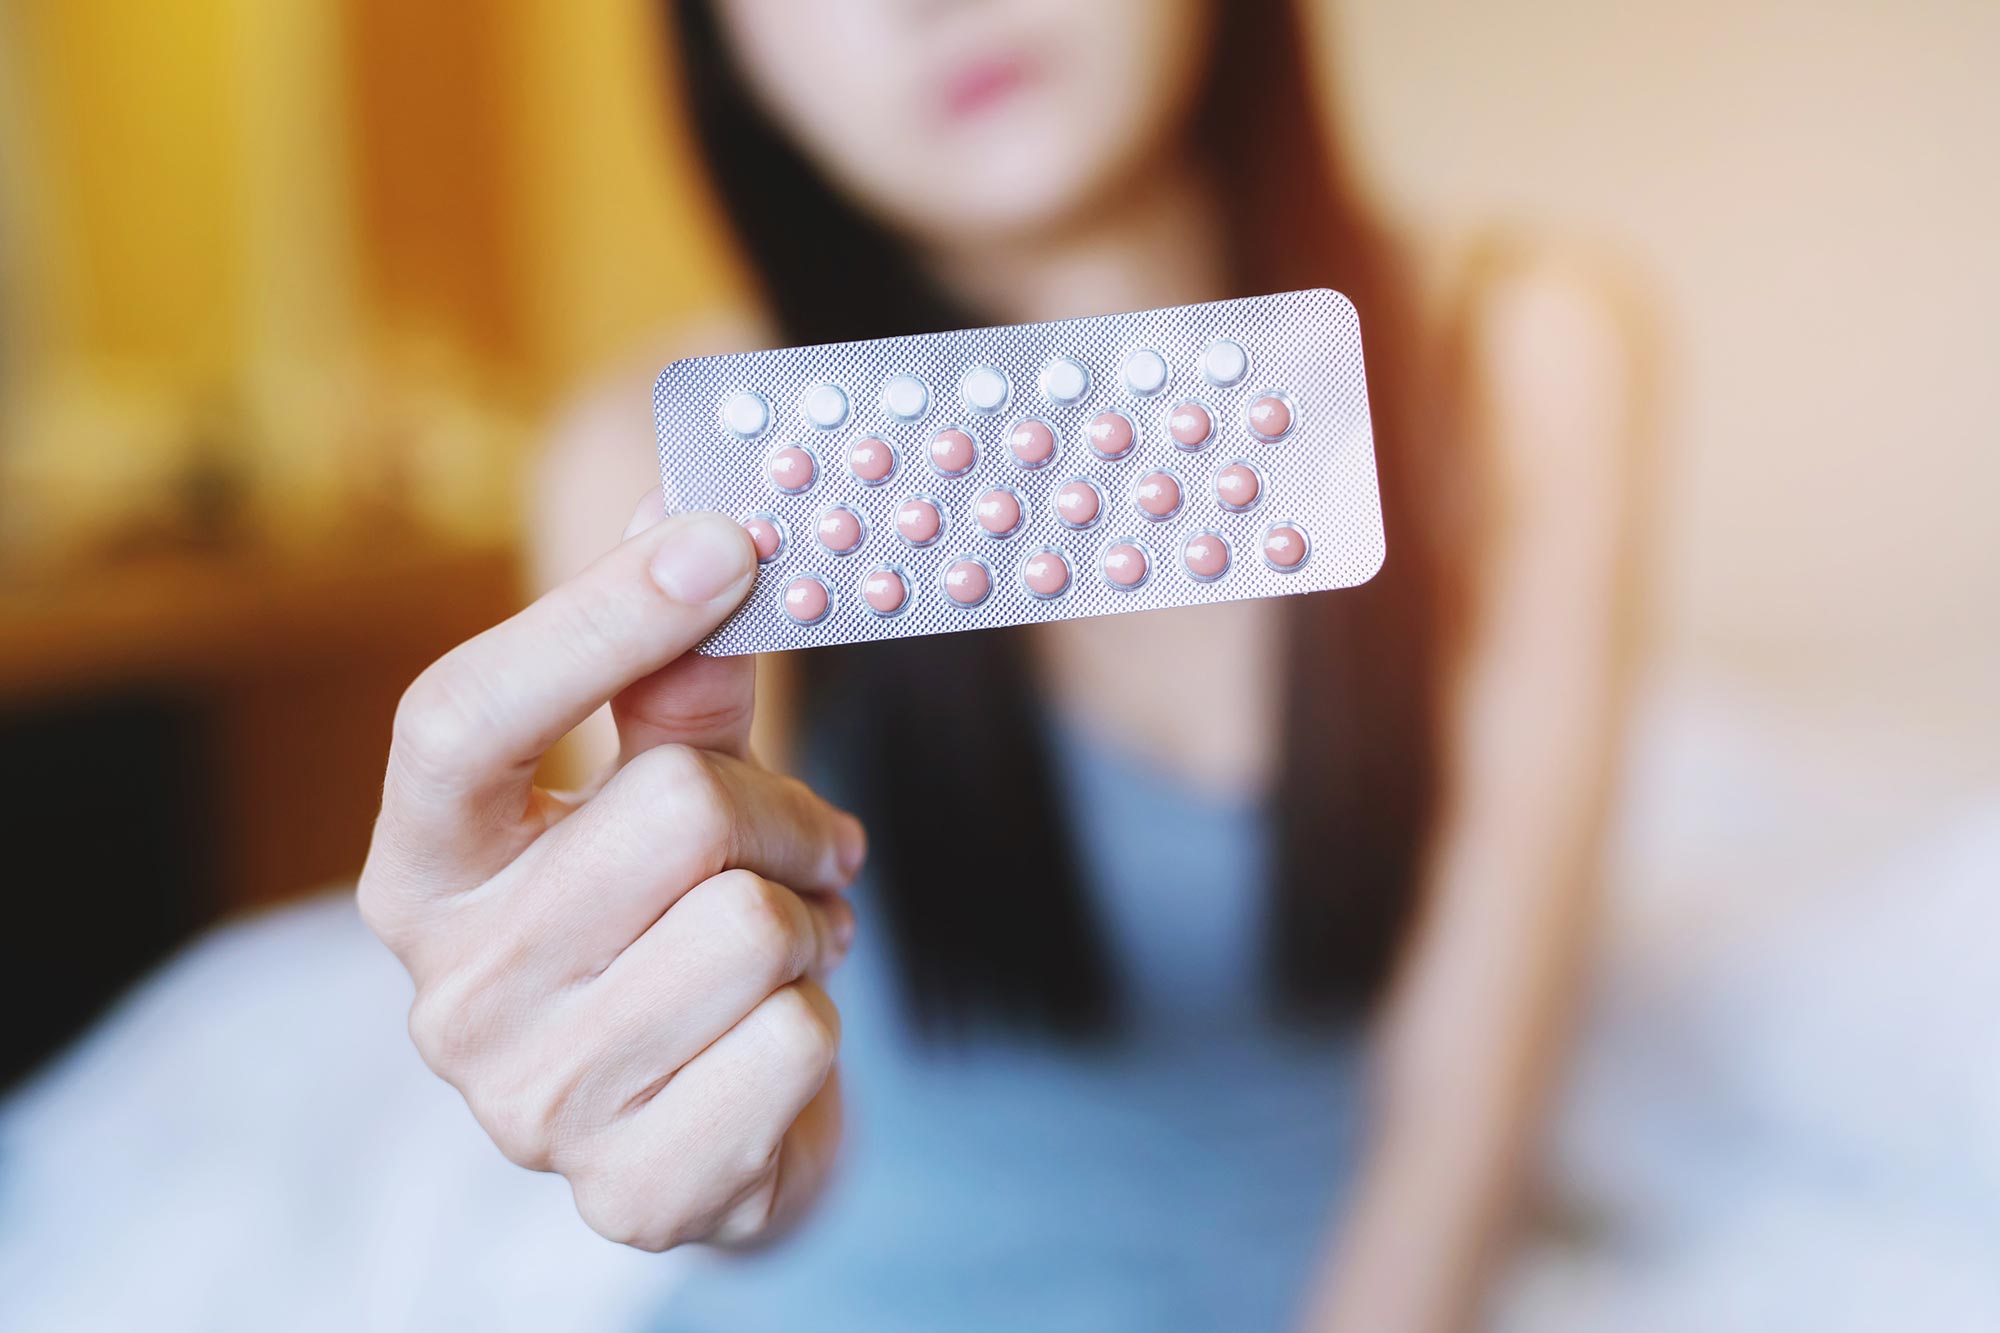 Las píldoras anticonceptivas orales están relacionadas con tasas más bajas de depresión